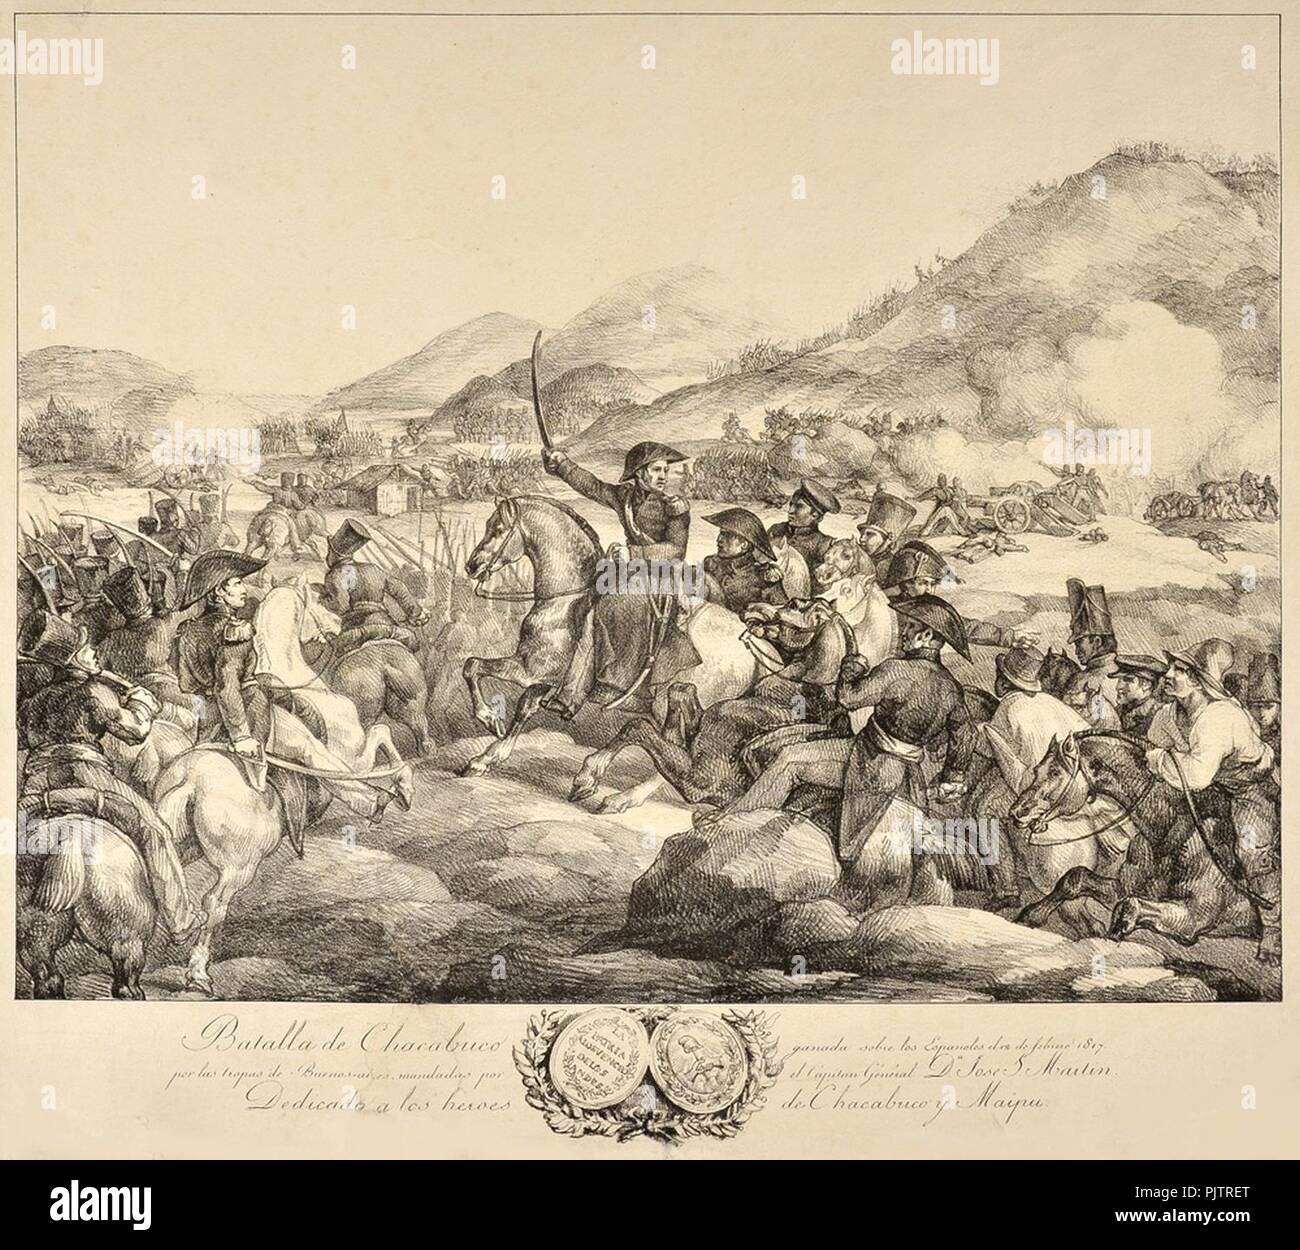 La batalla de Chacabuco. Litografía de Géricault. Foto de stock